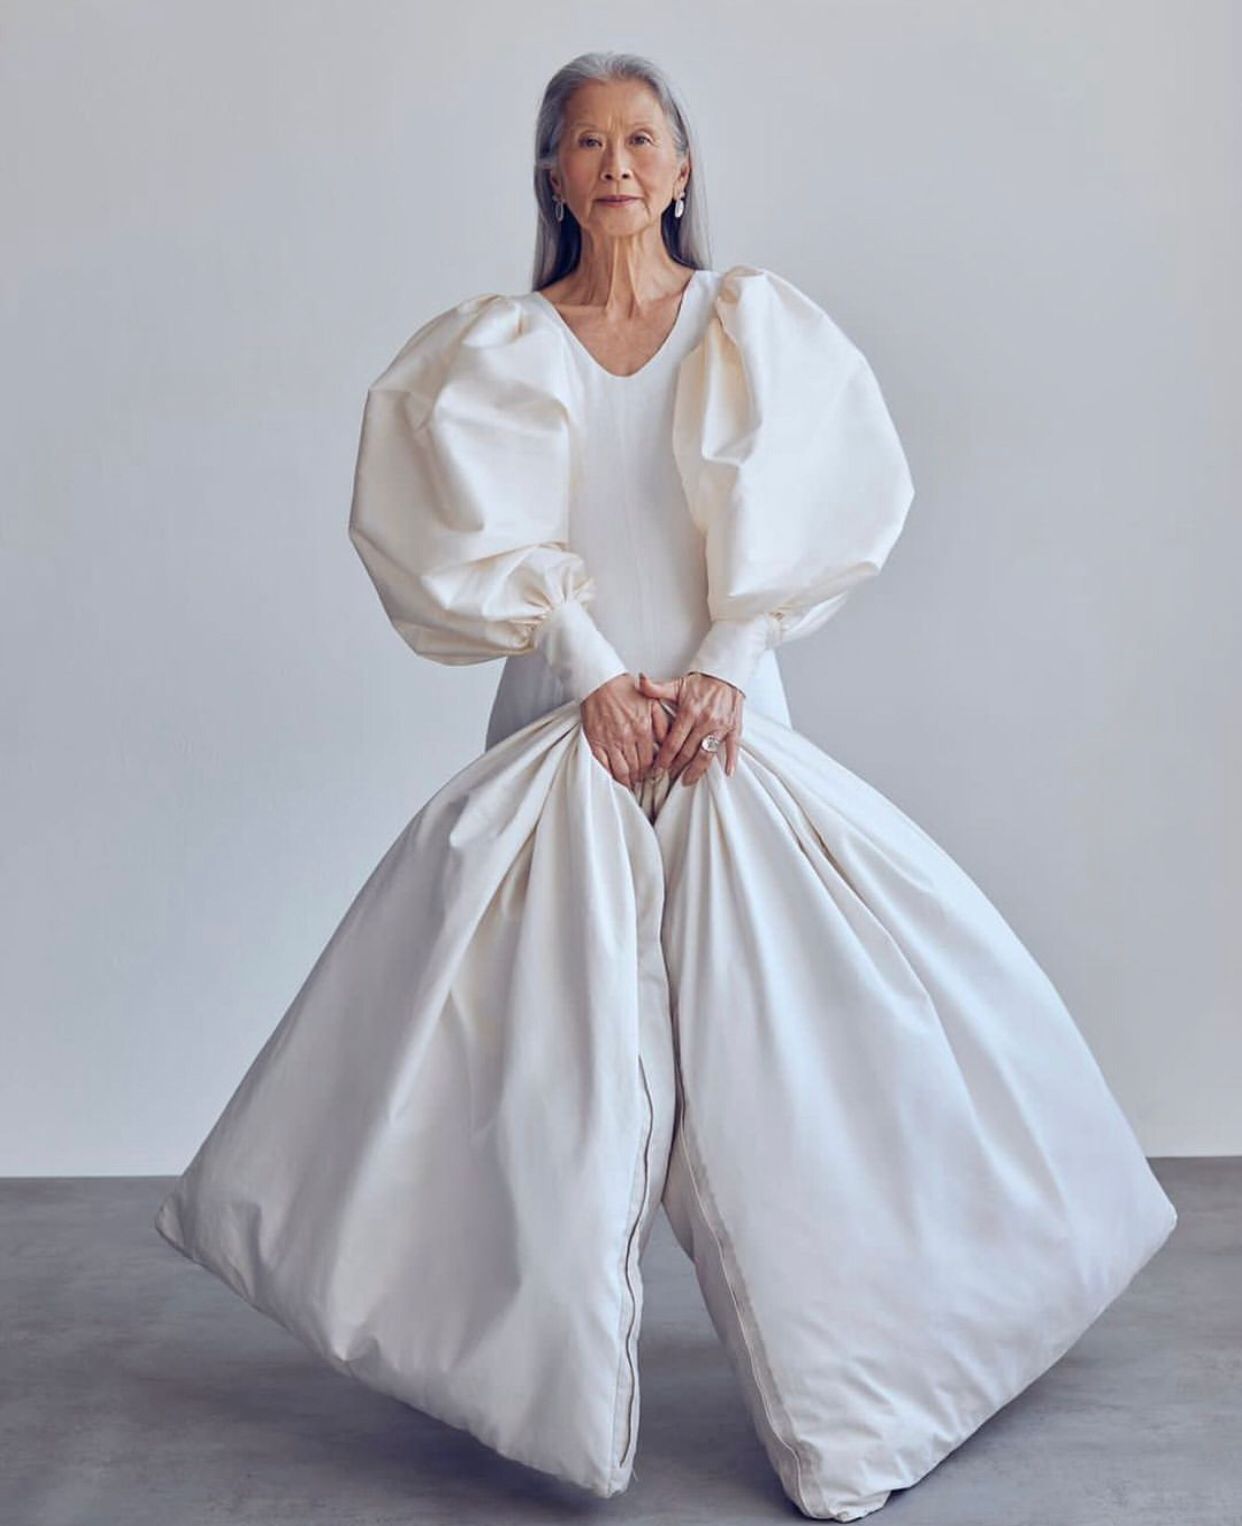 Ella Es Rosa Saito La Modelo De 71 Años Que Recién Incursionó En La Industria De La Moda 2643